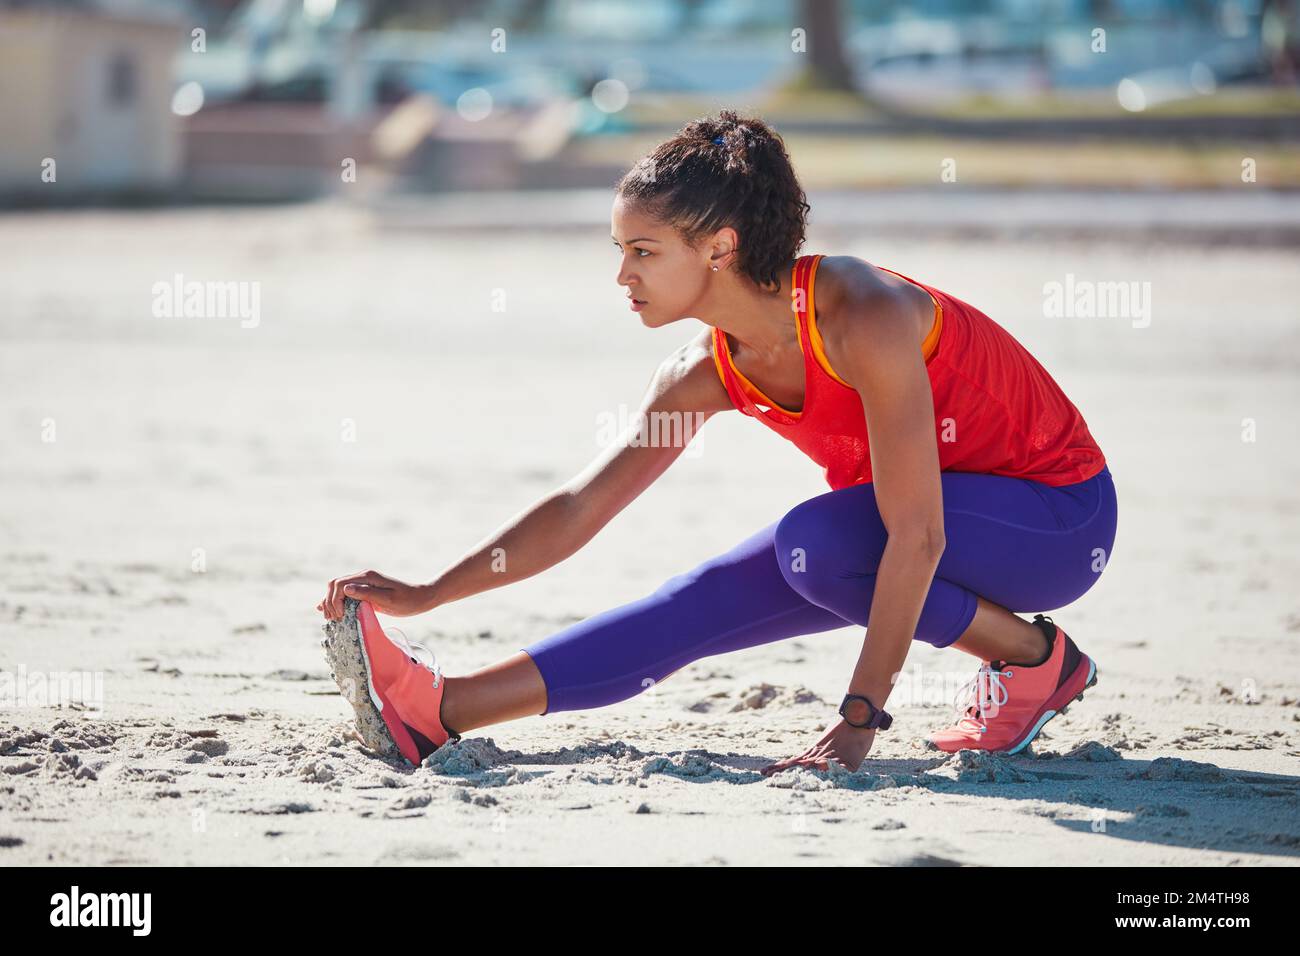 Fare tutte le scelte giuste per uno stile di vita migliore. una giovane donna sportiva che pratica la sua routine di allenamento. Foto Stock